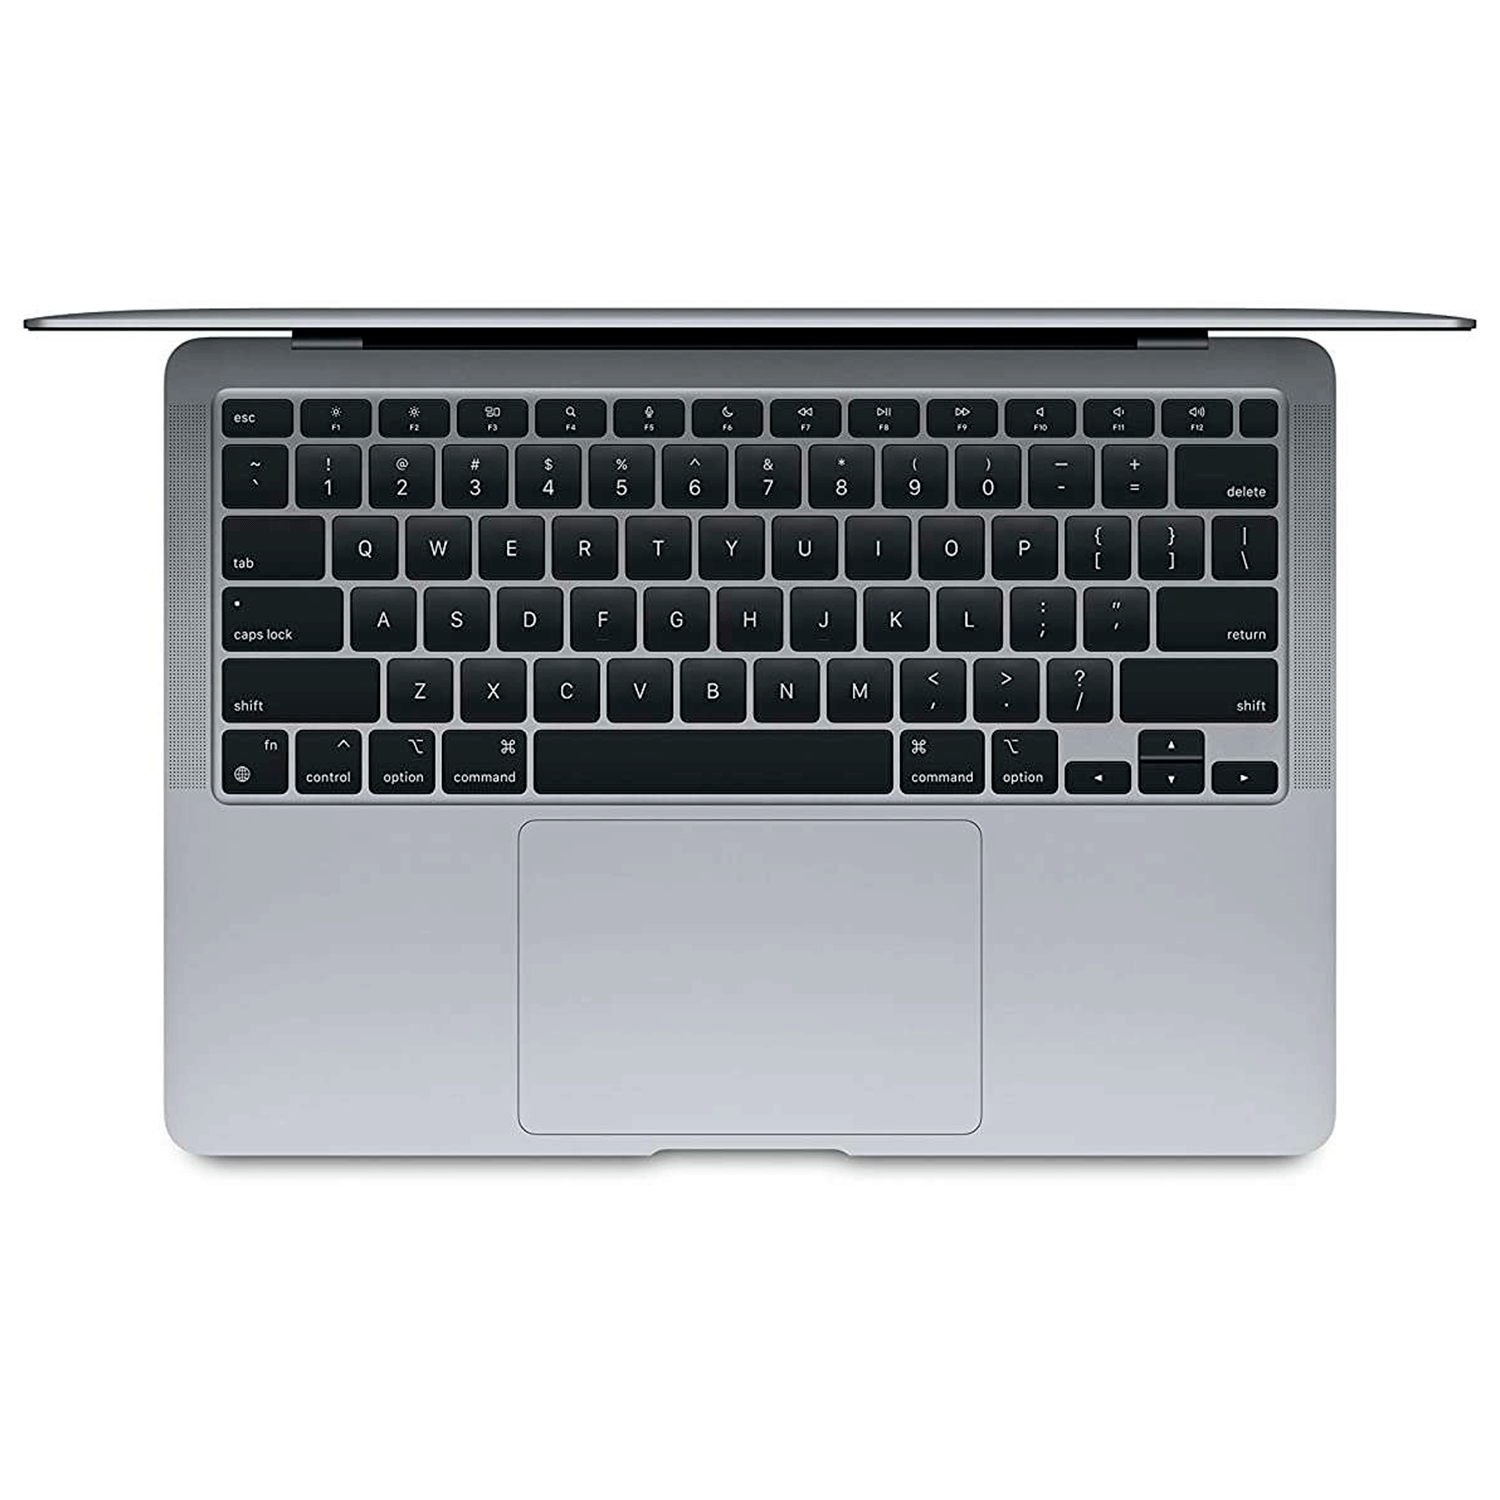 Apple Macbook Air MGN63HN/A M1 / Memória RAM 8GB / SSD 256GB / Tela 13.3" - Cinza (2020)
